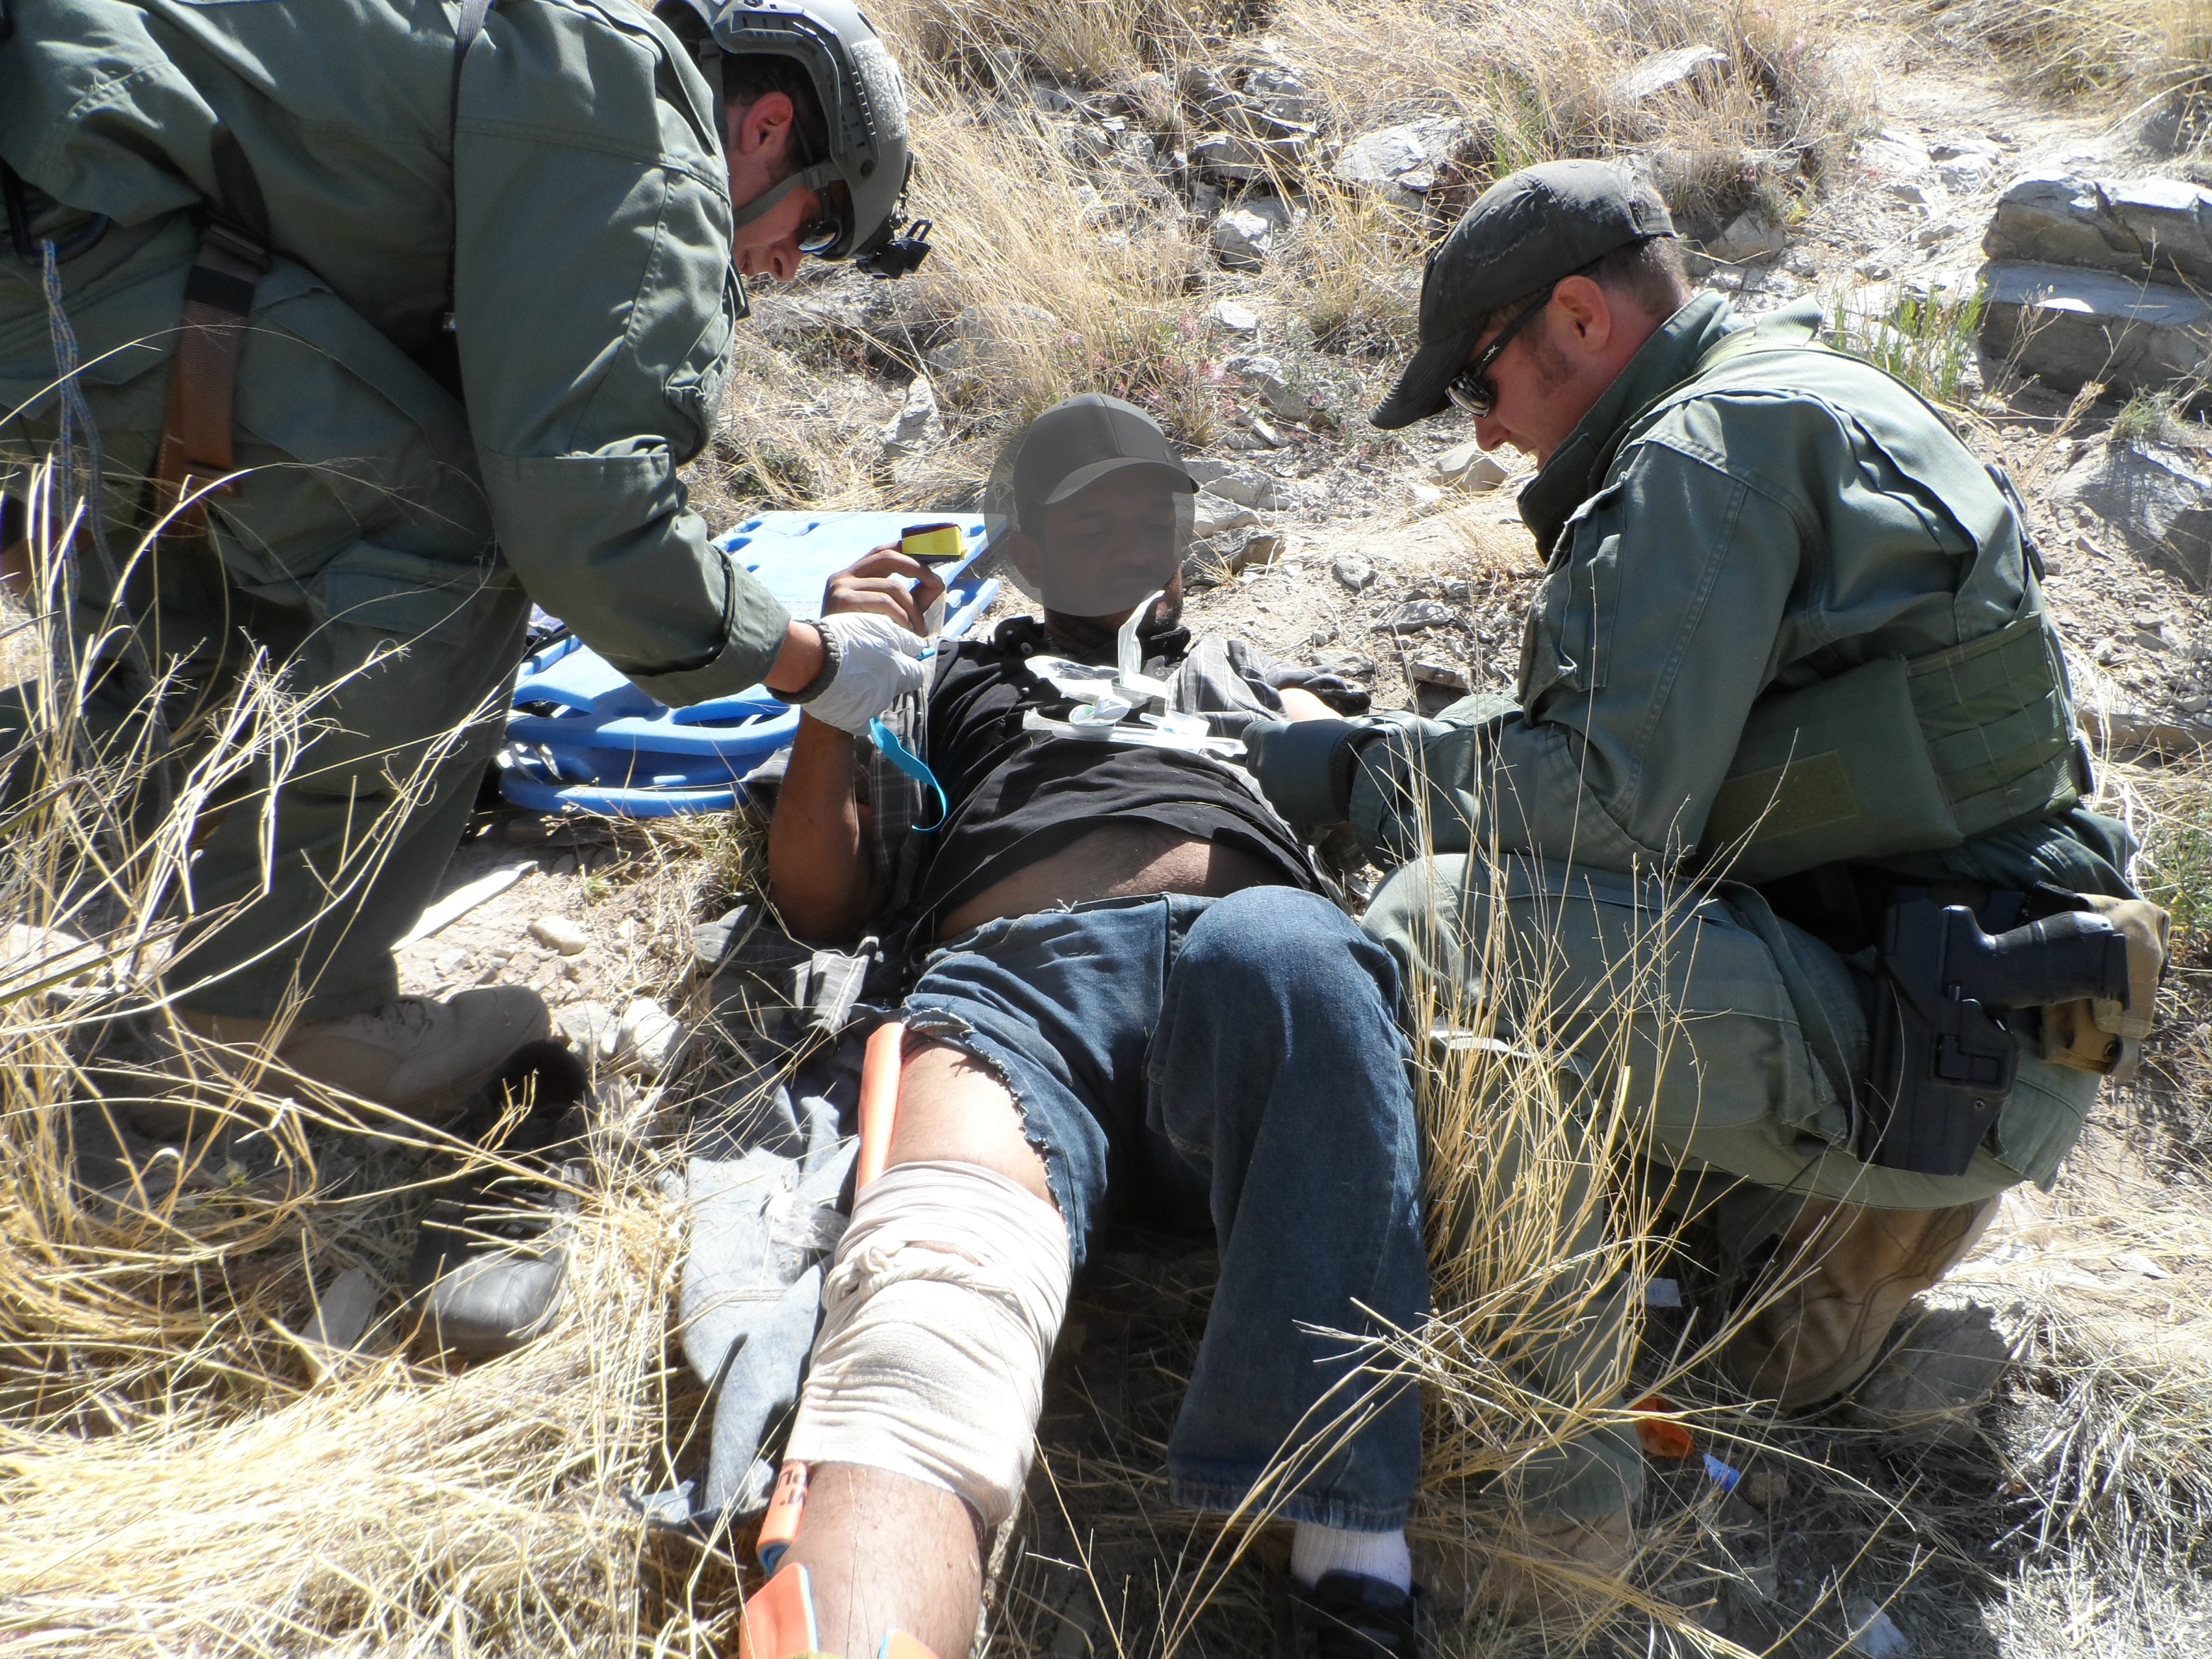 Miembros del  Equipo de Búsqueda, Trauma y Rescate de la Patrulla Fronteriza (BORSTAR) rinden primeros auxilios a un migrante lesionado.